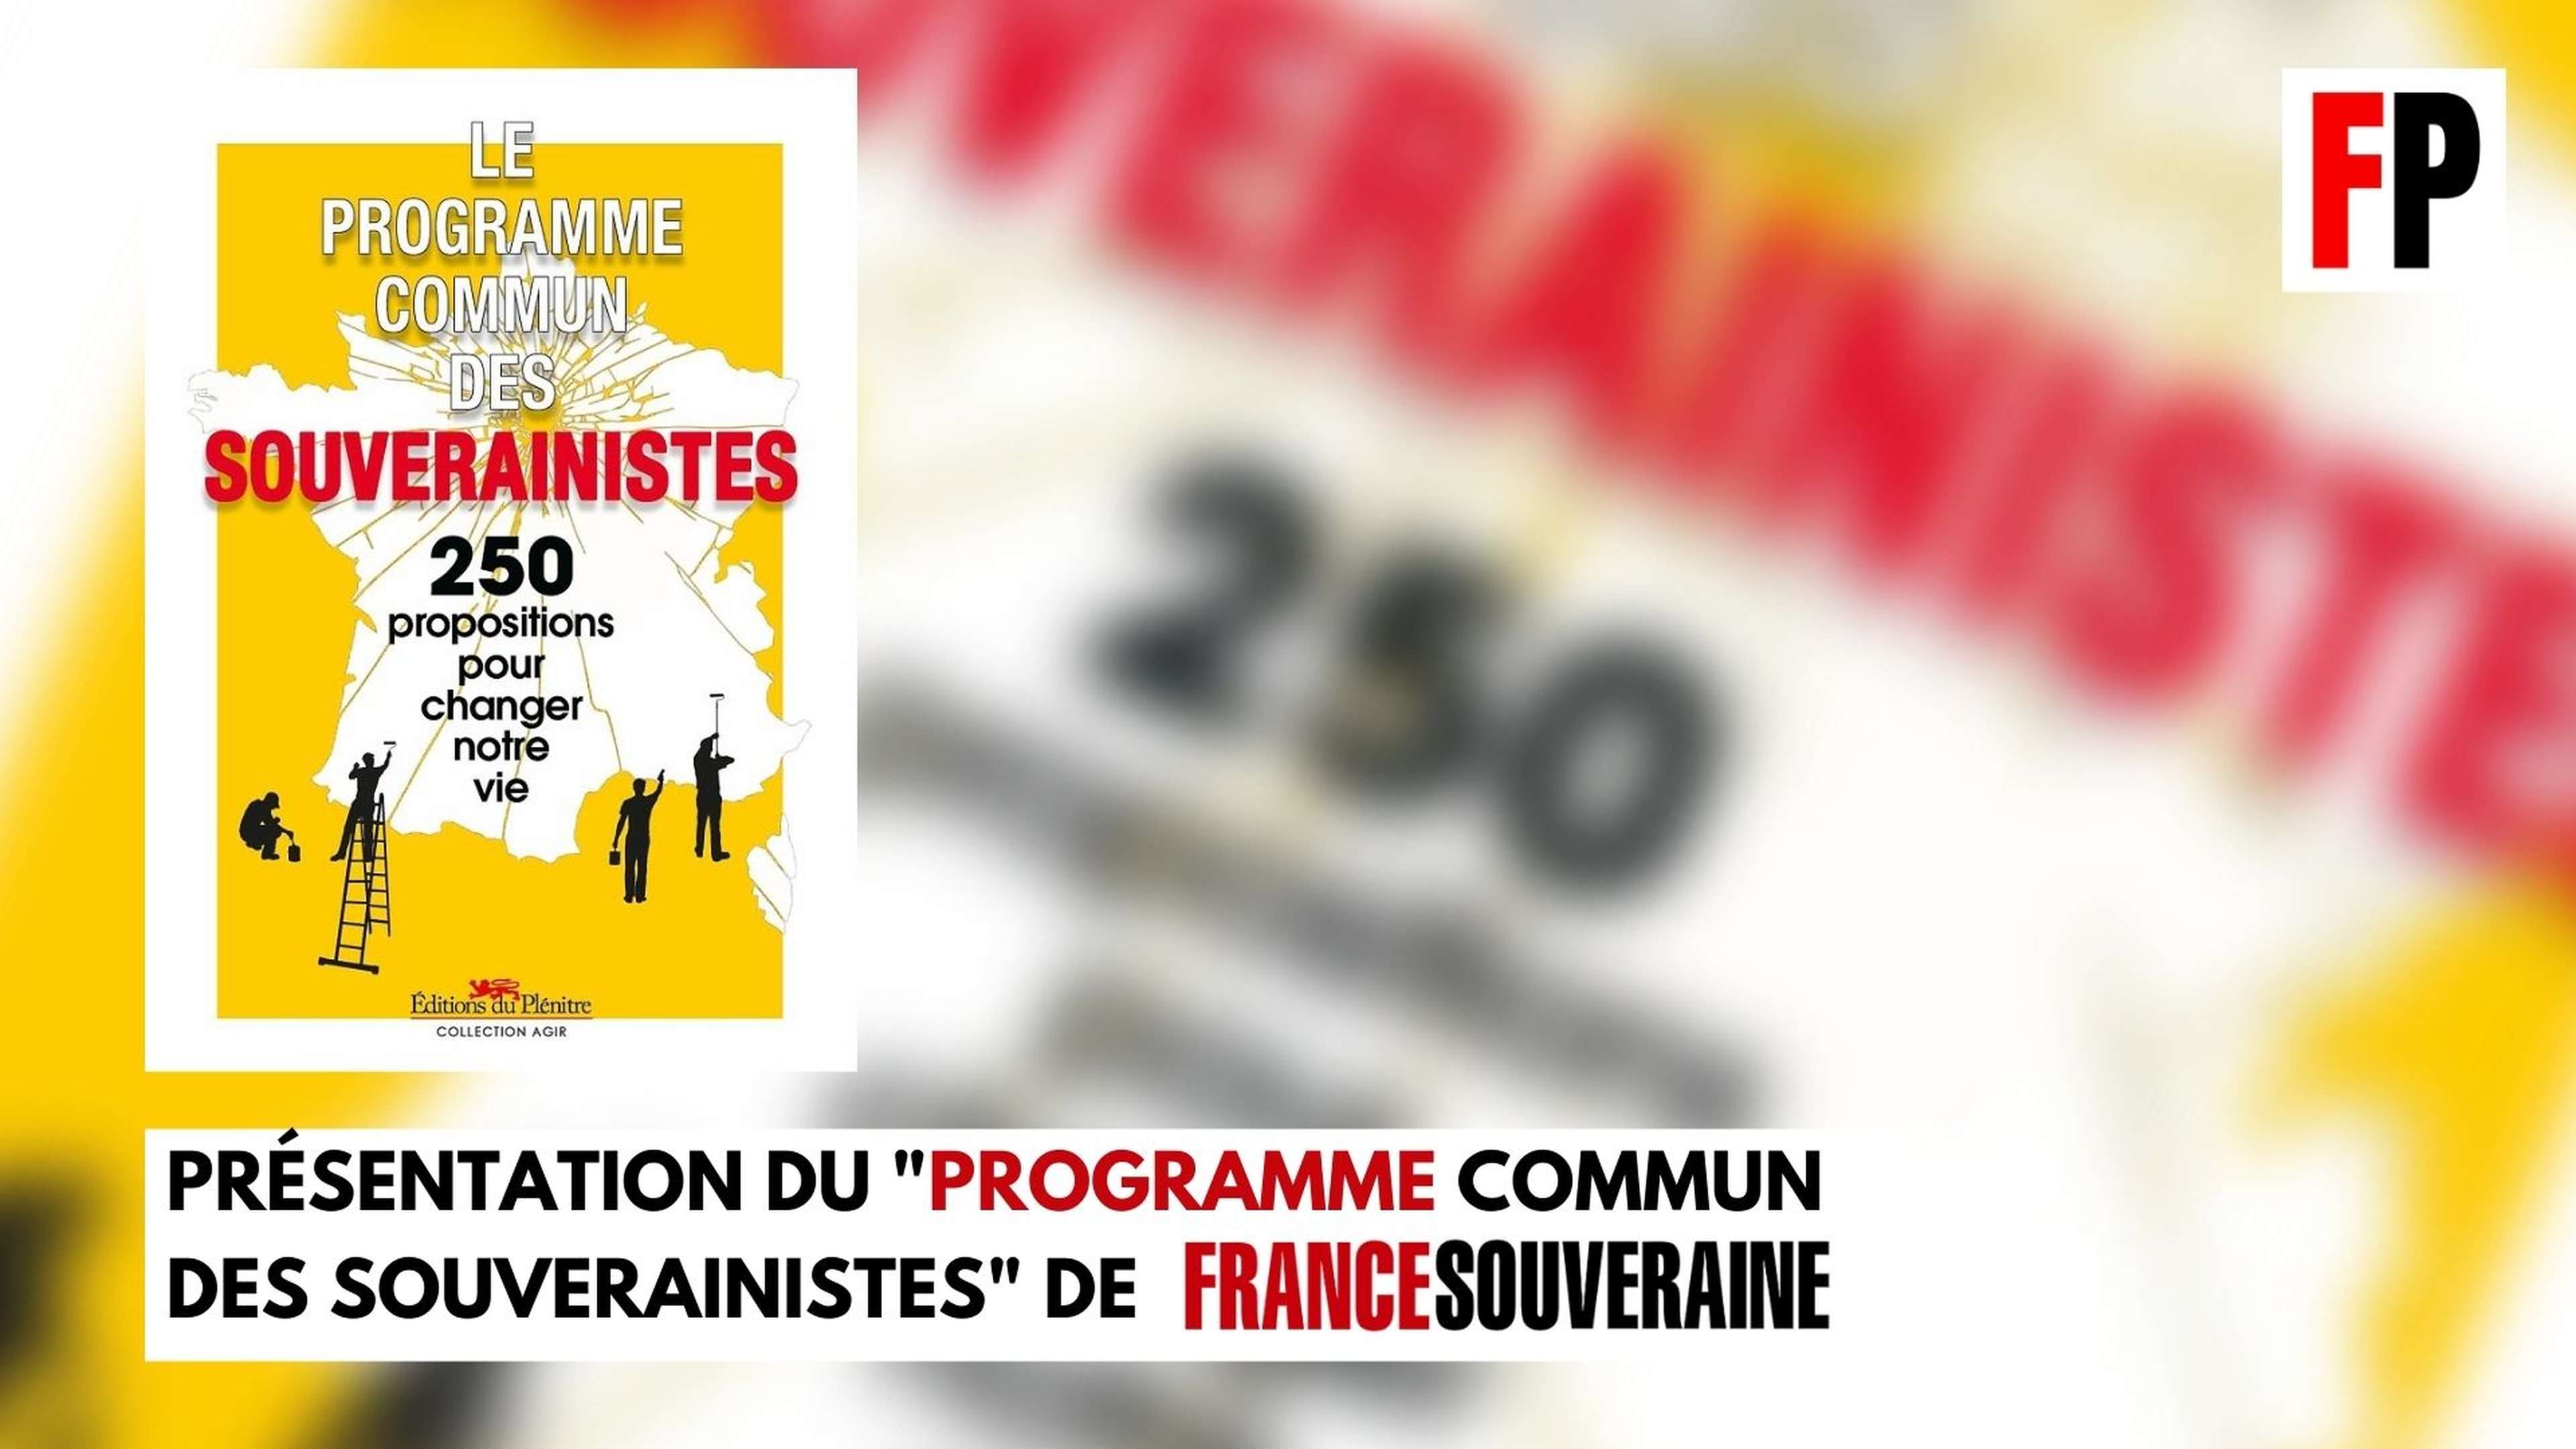 Présentation du "Programme commun des souverainistes" de France souveraine